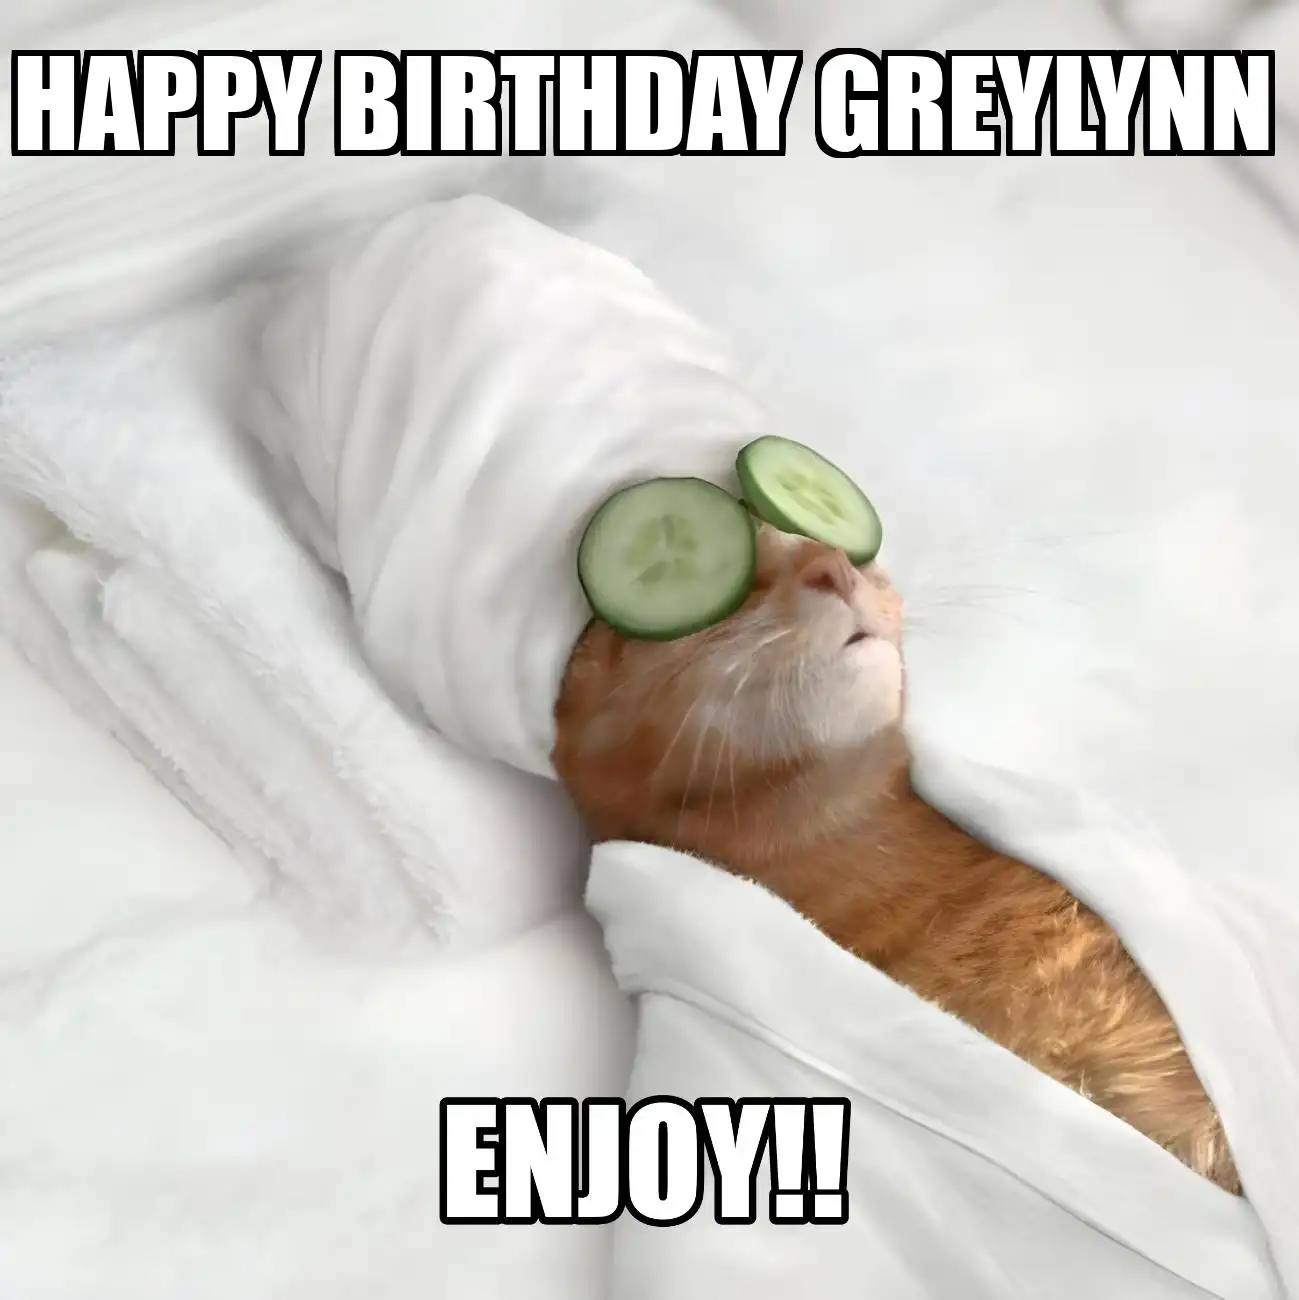 Happy Birthday Greylynn Enjoy Cat Meme